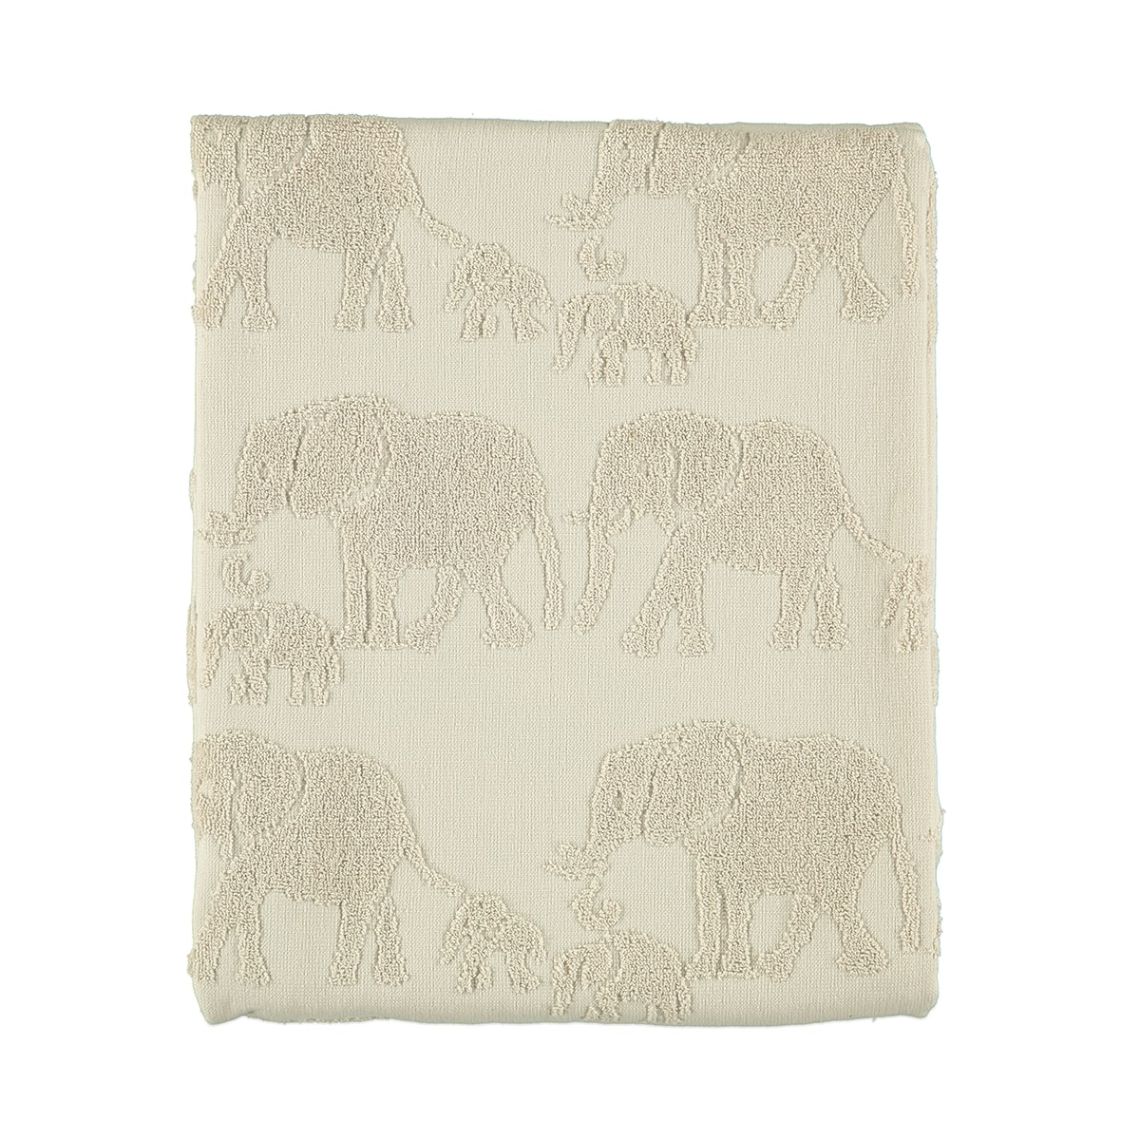 Elephant en ljust sandfärgad frottéhandduk 100% bomull från Noble house, mått 50 x 70 cm.